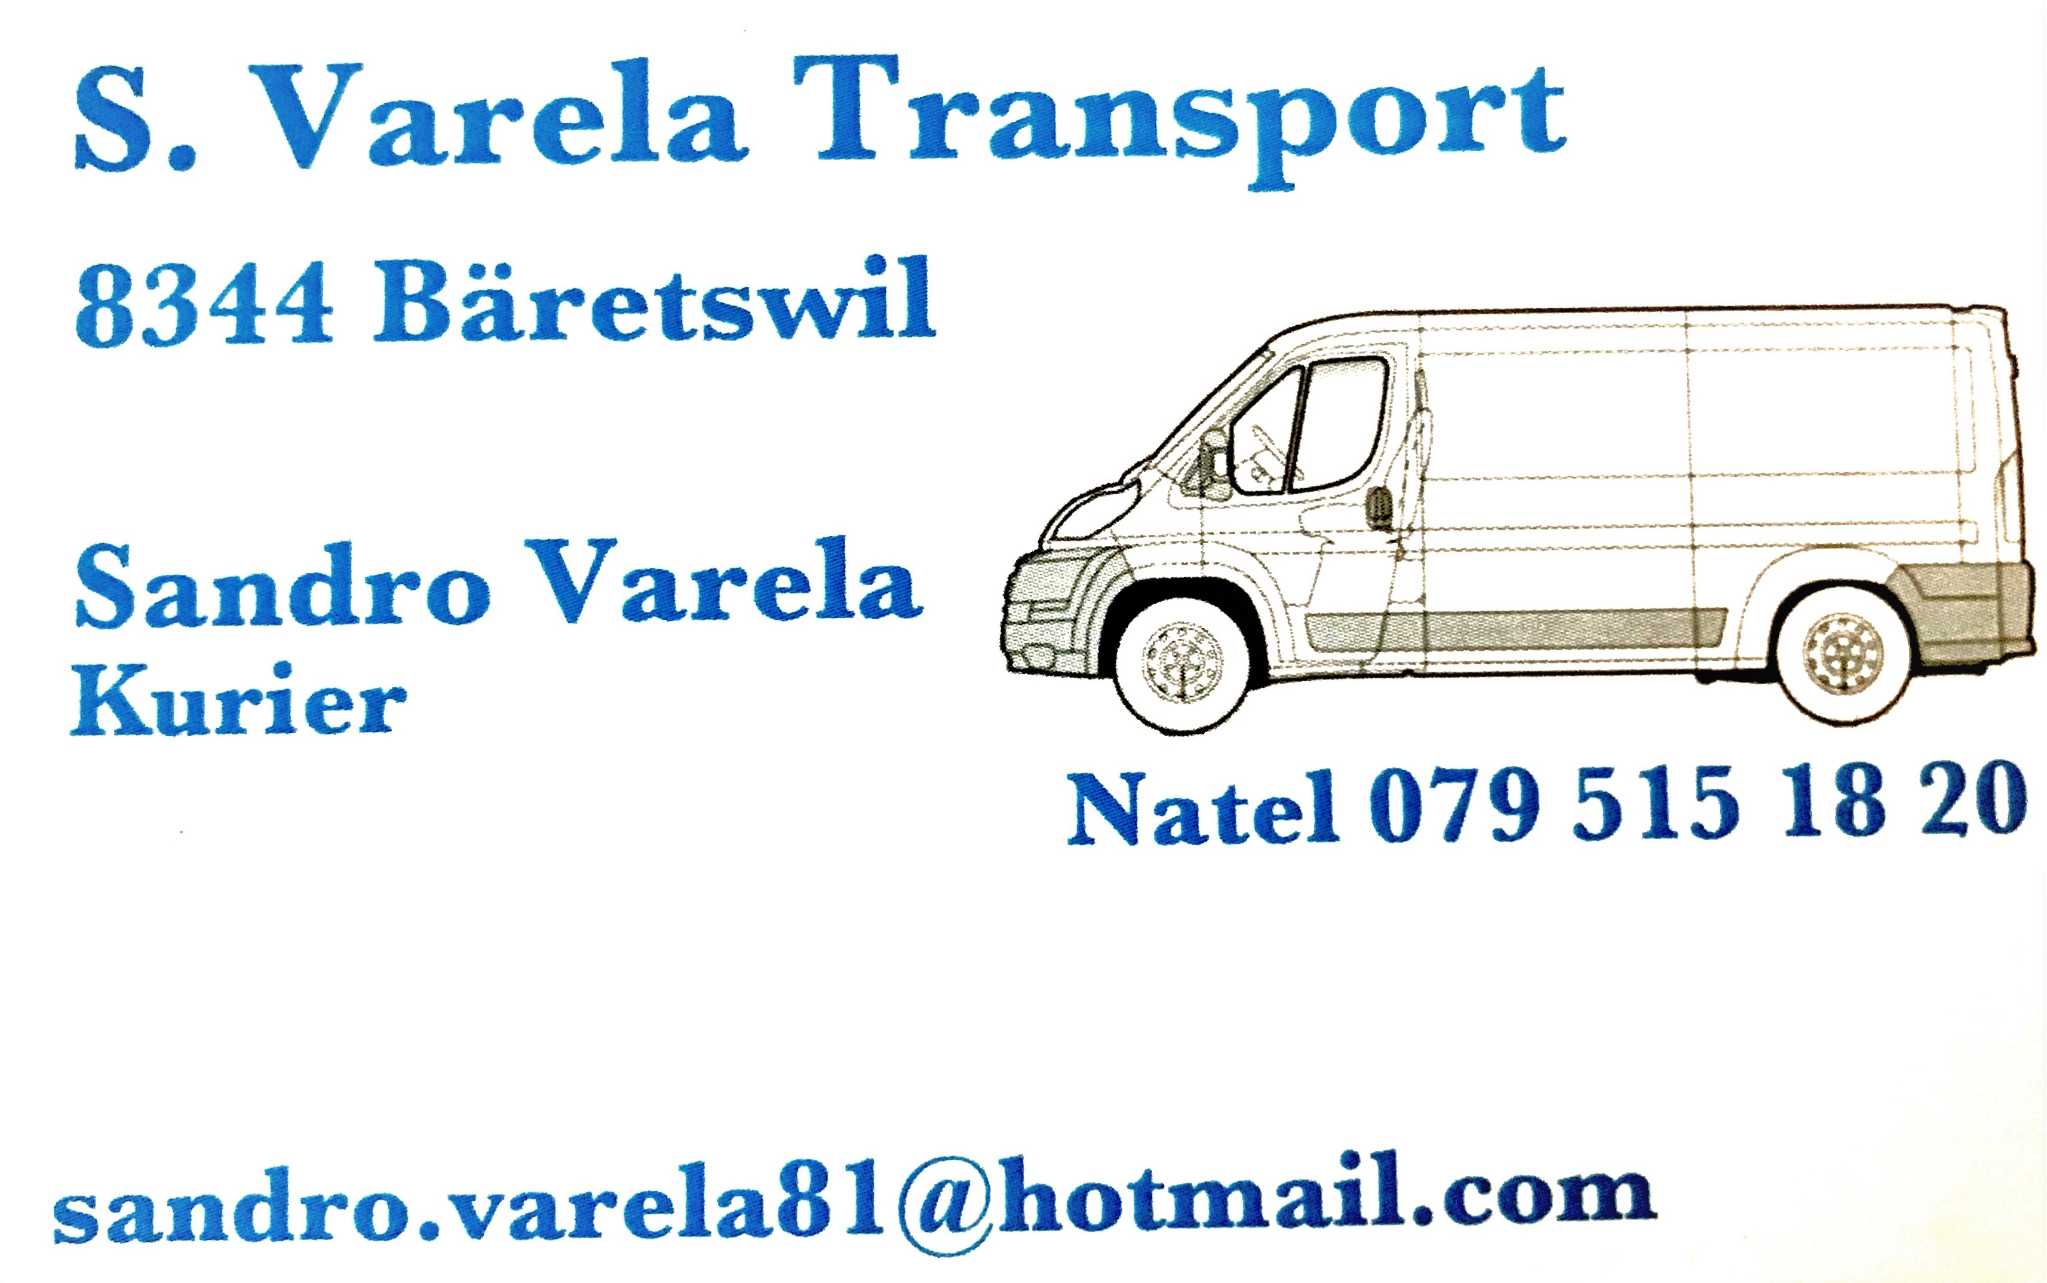 Varela Transport